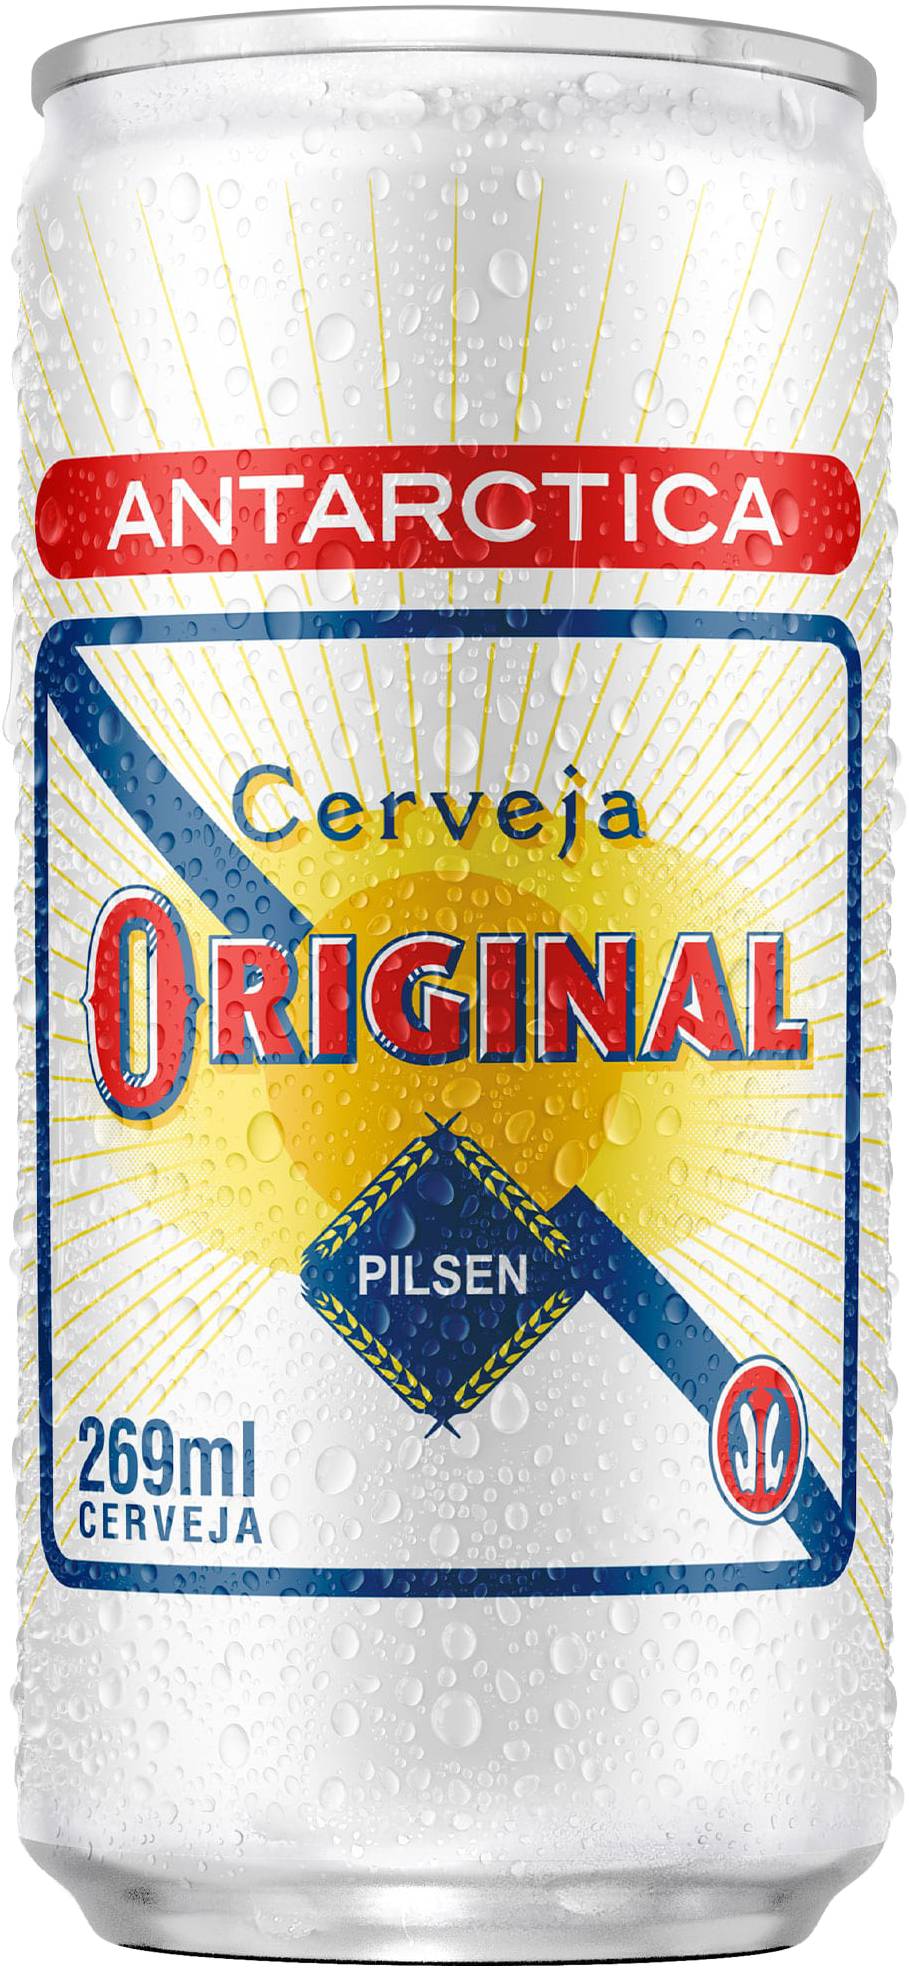 Original cerveja pilsen (269 ml)